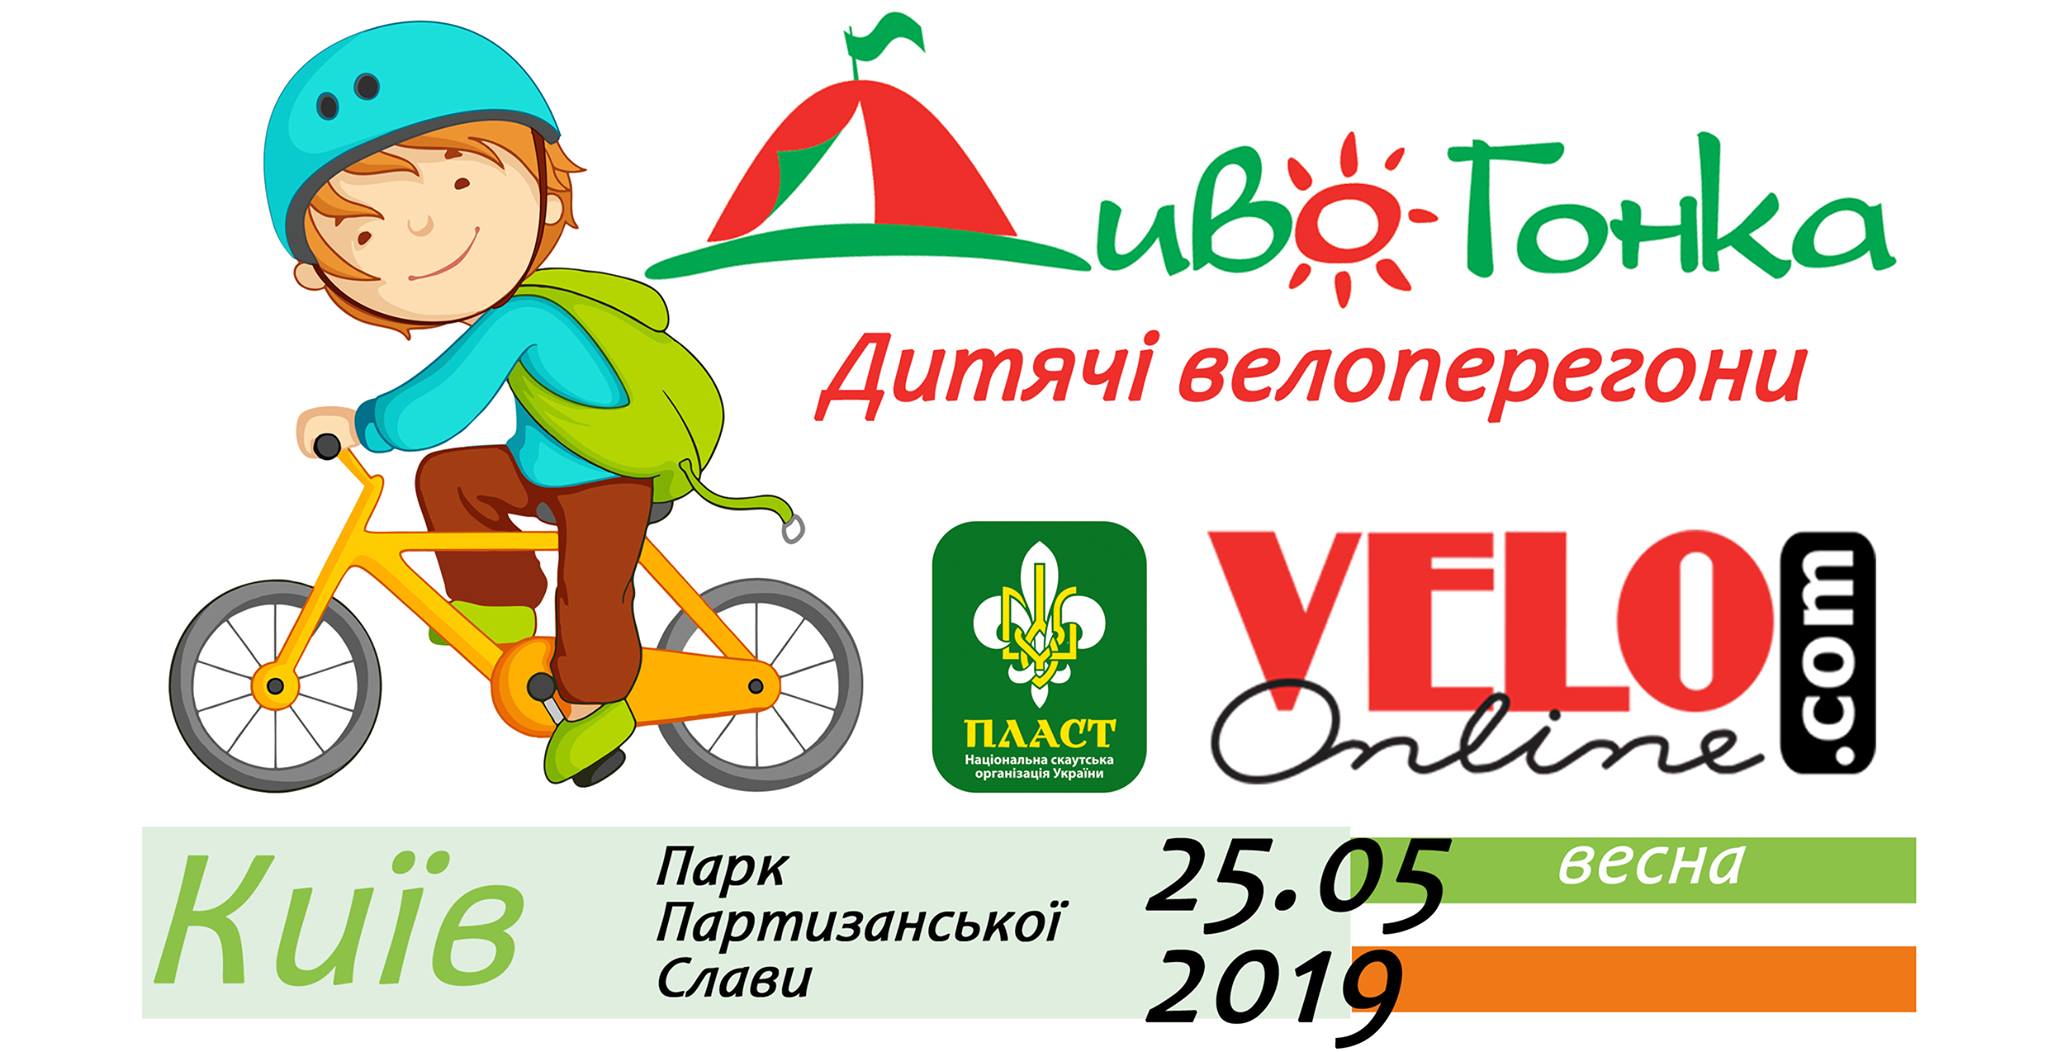 Куда пойти на День Киева - детская велогонка